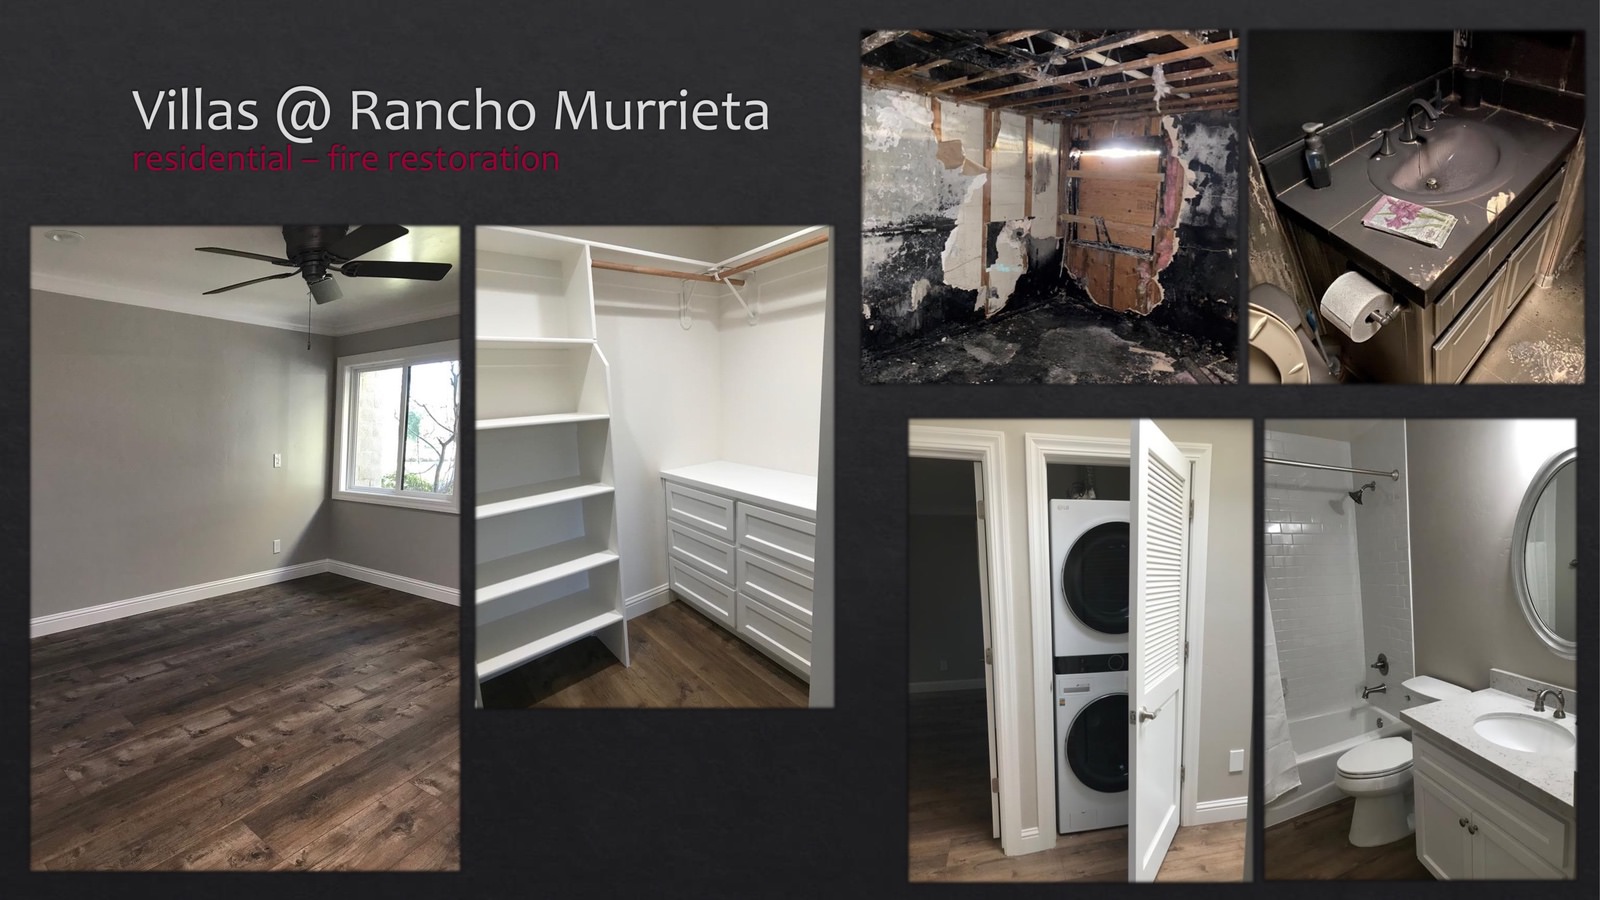 Rancho Murrieta Villas Residential fire restoration - bathroom and bedroom - lightbox